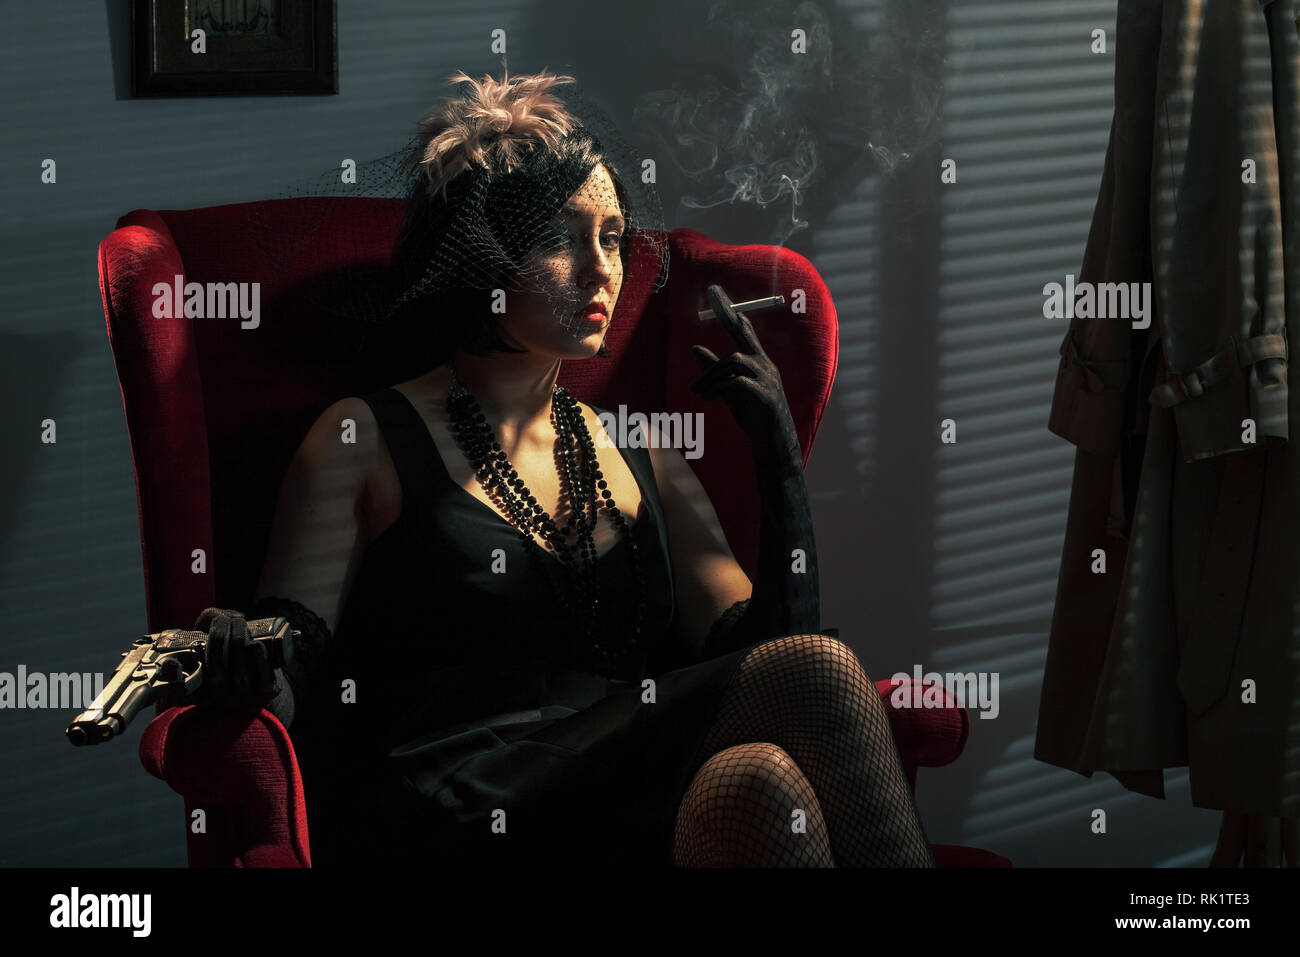 Frau mit einem Gewehr, das Rauchen einer Zigarette, Film Noir Stil Stockfoto